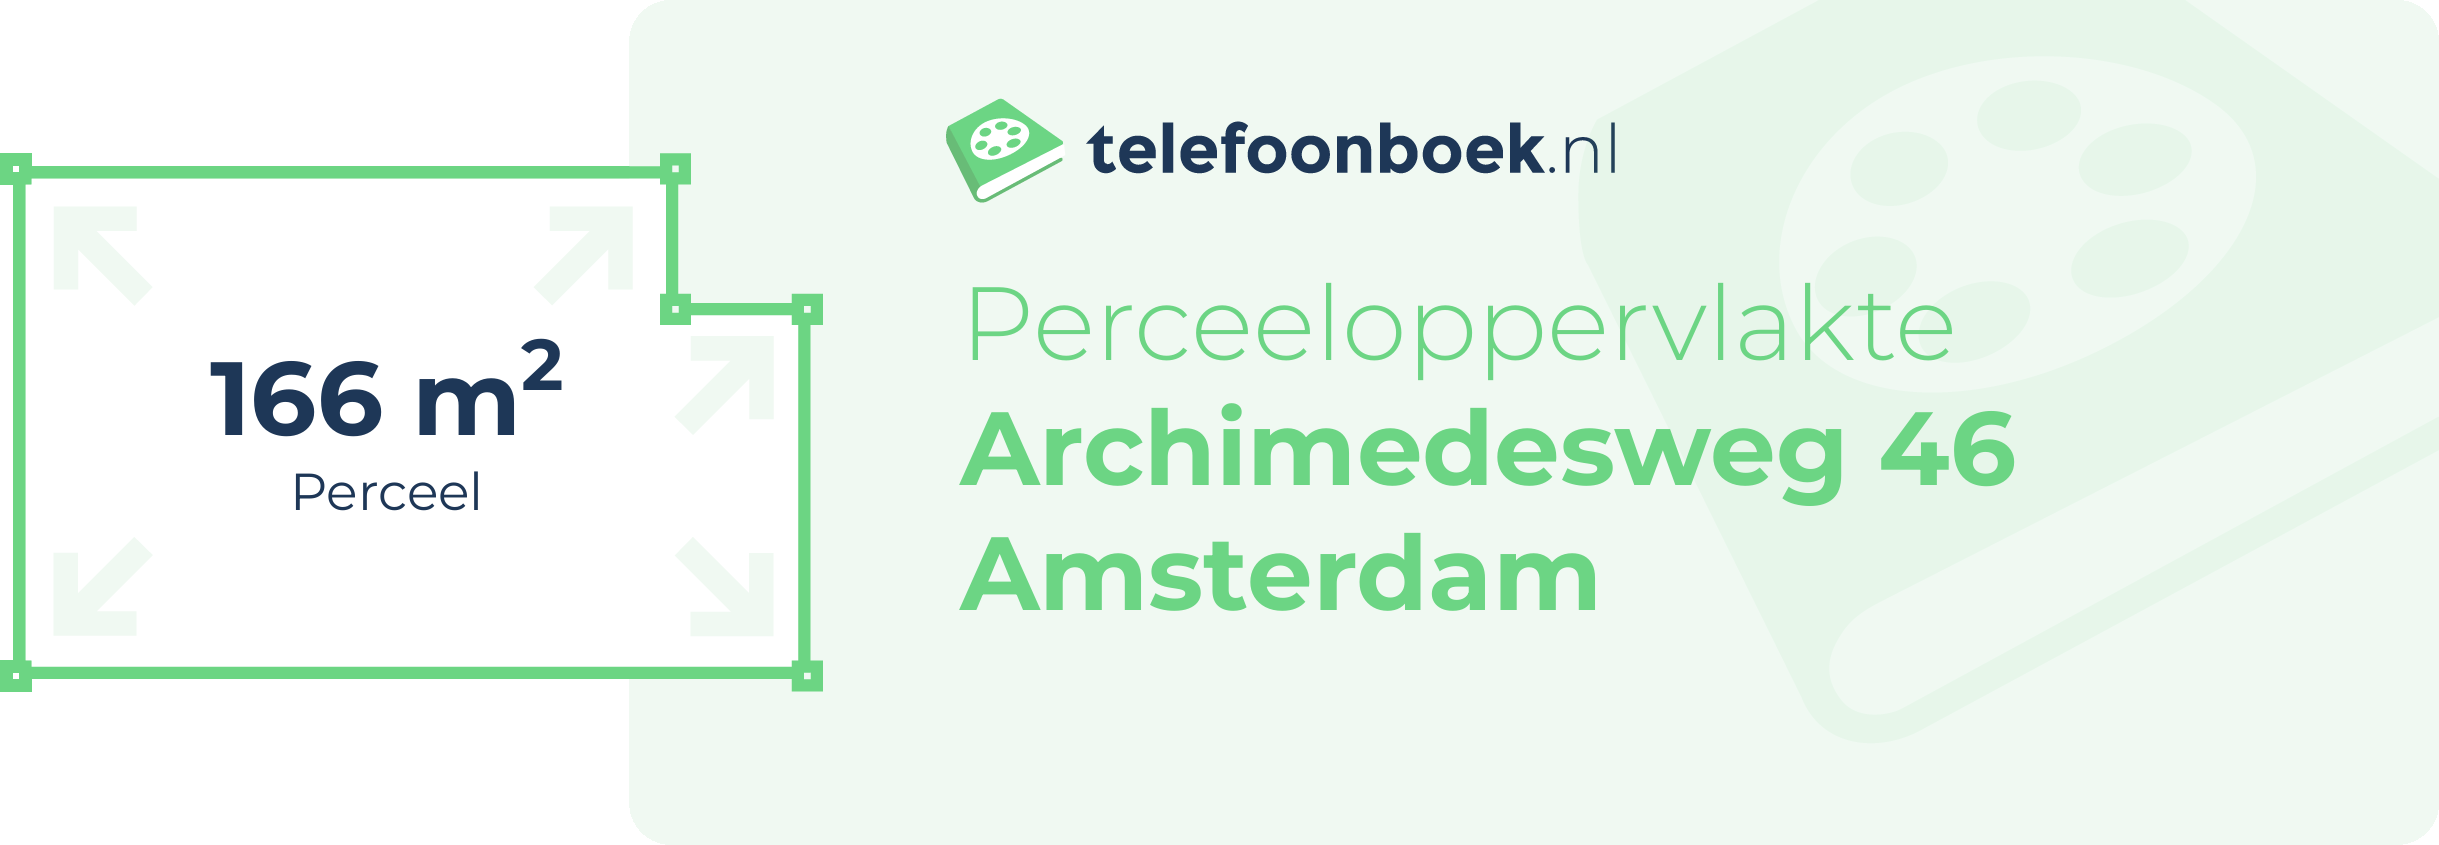 Perceeloppervlakte Archimedesweg 46 Amsterdam